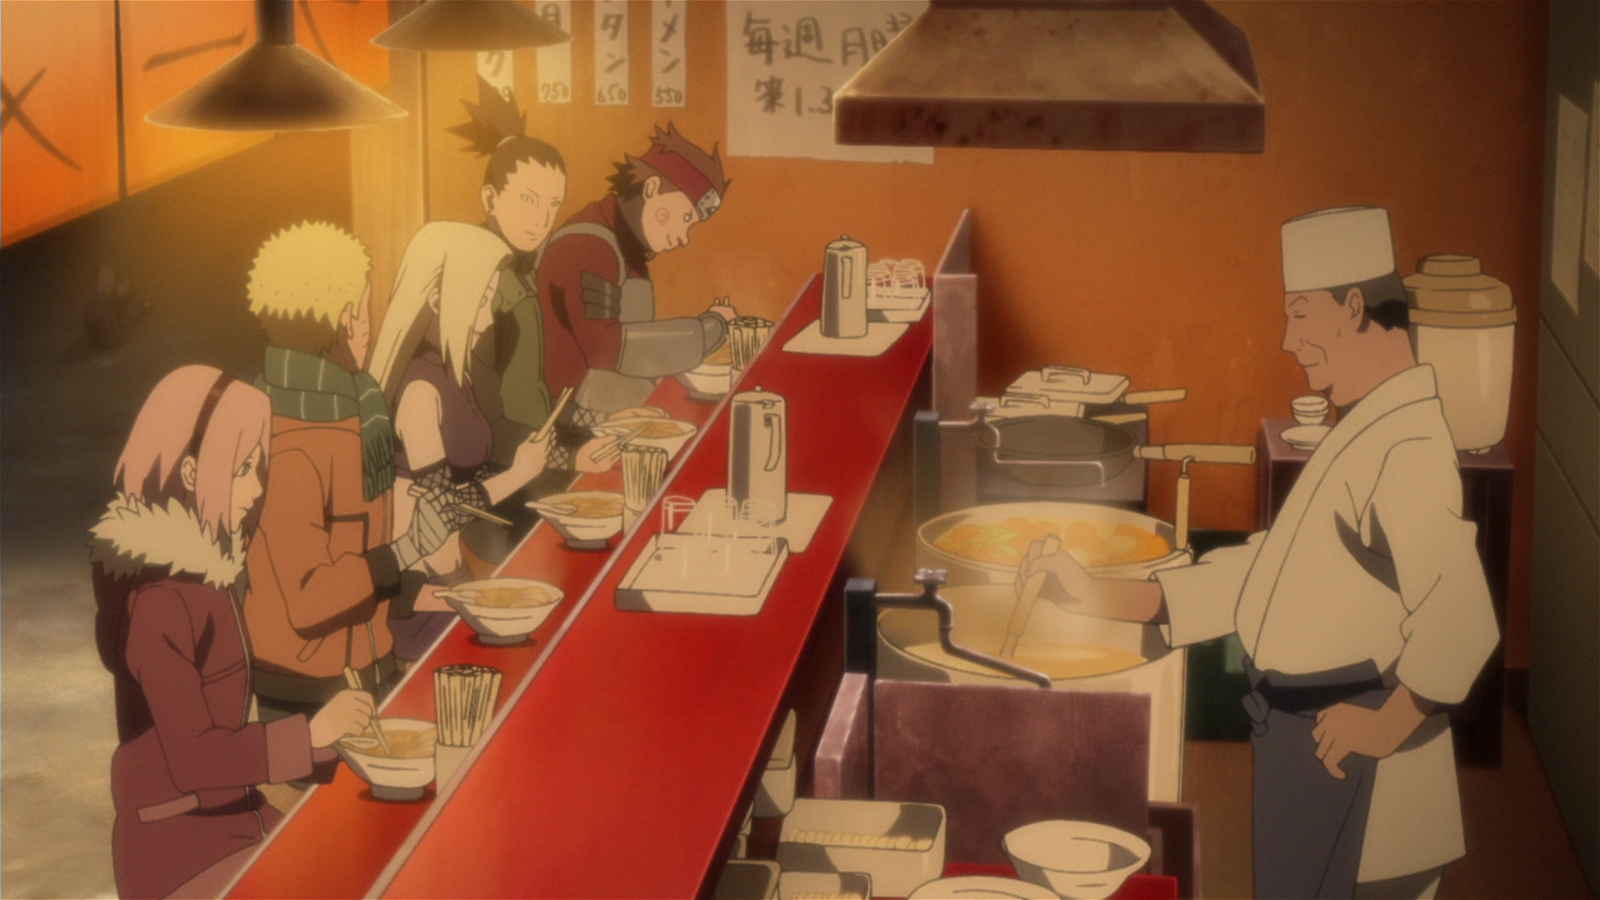 naruto and his friends at ichiraku ramen shop